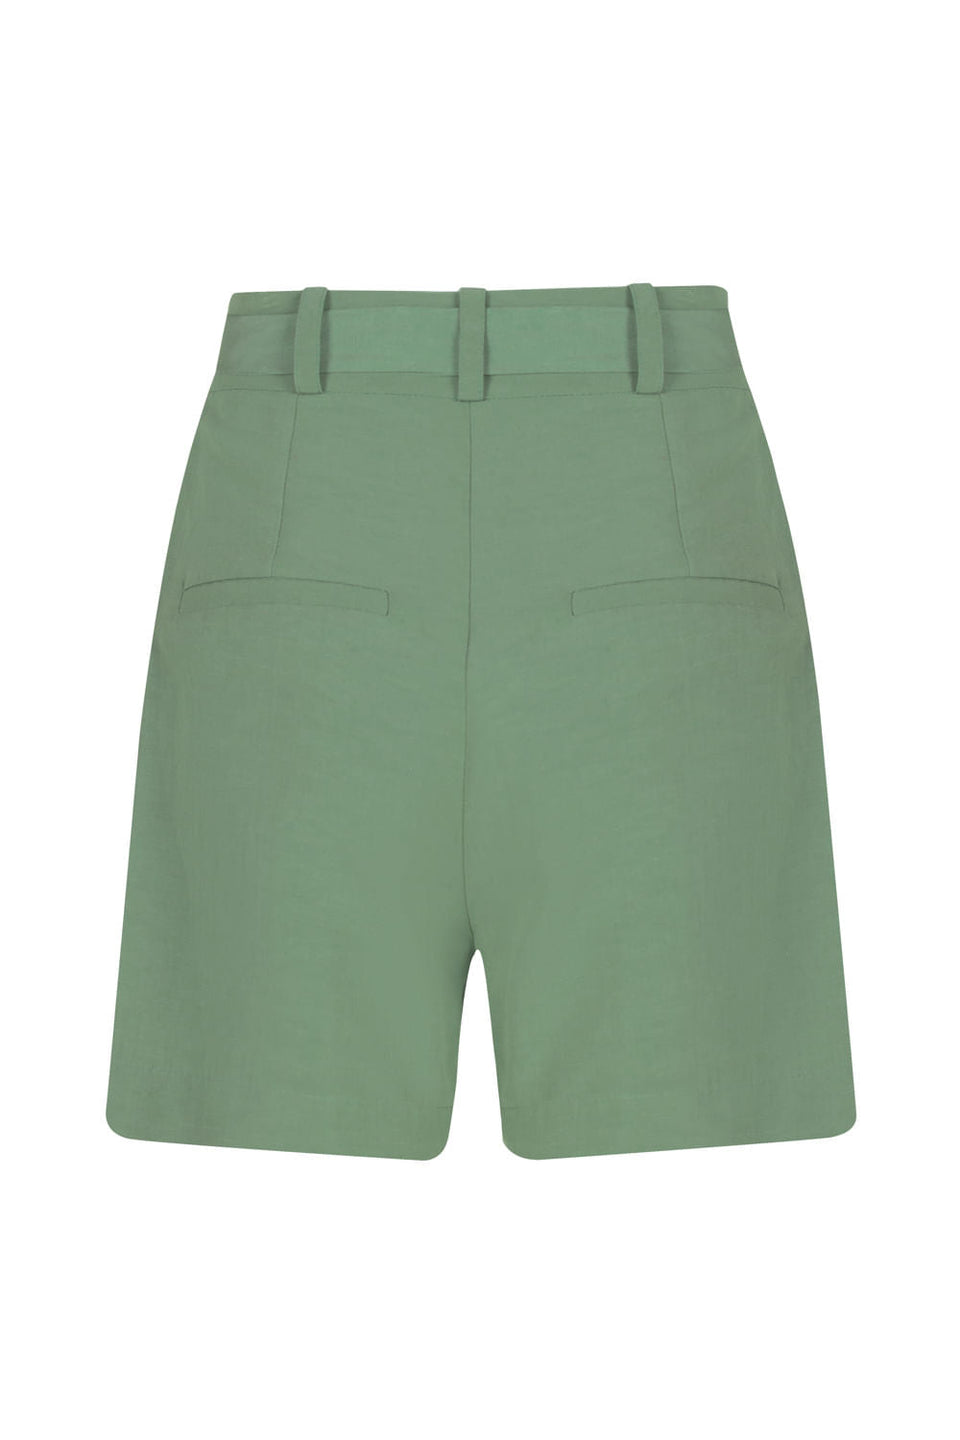 Shorts Classic Linho Verde